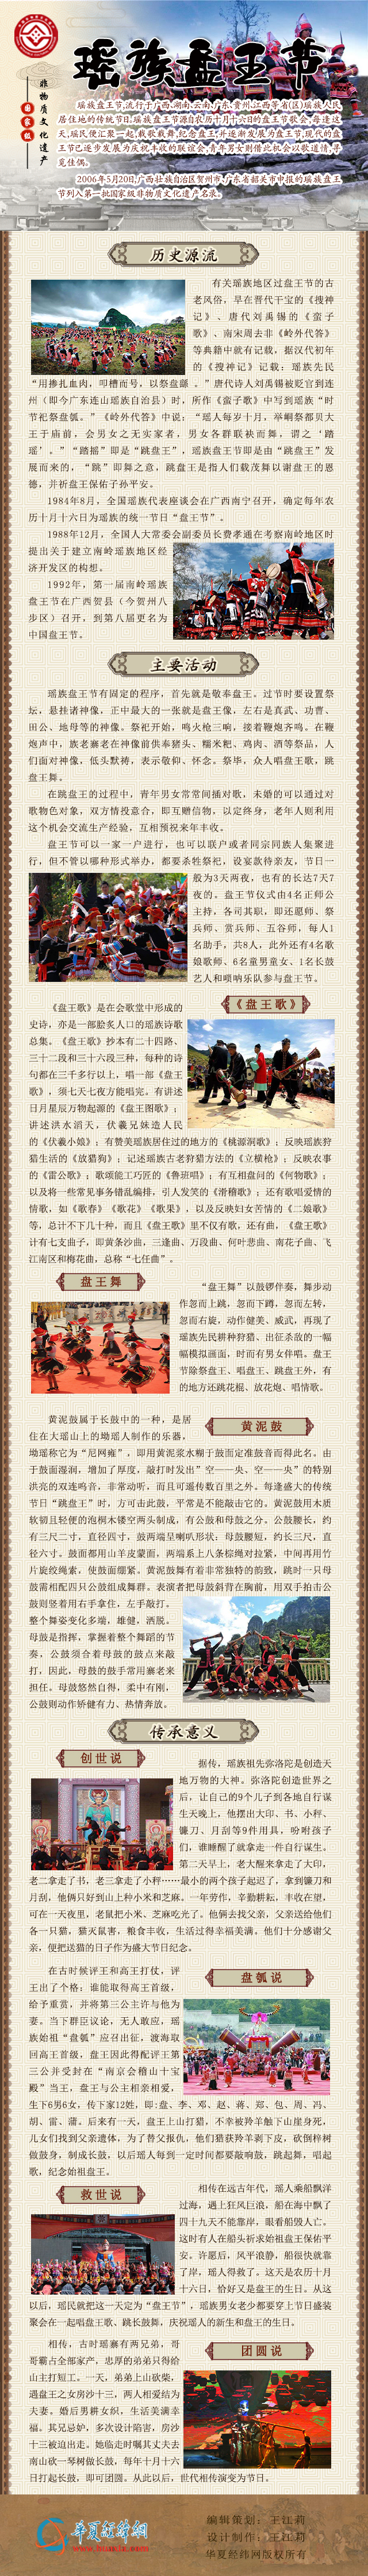 国家级非物质文化遗产——瑶族盘王节